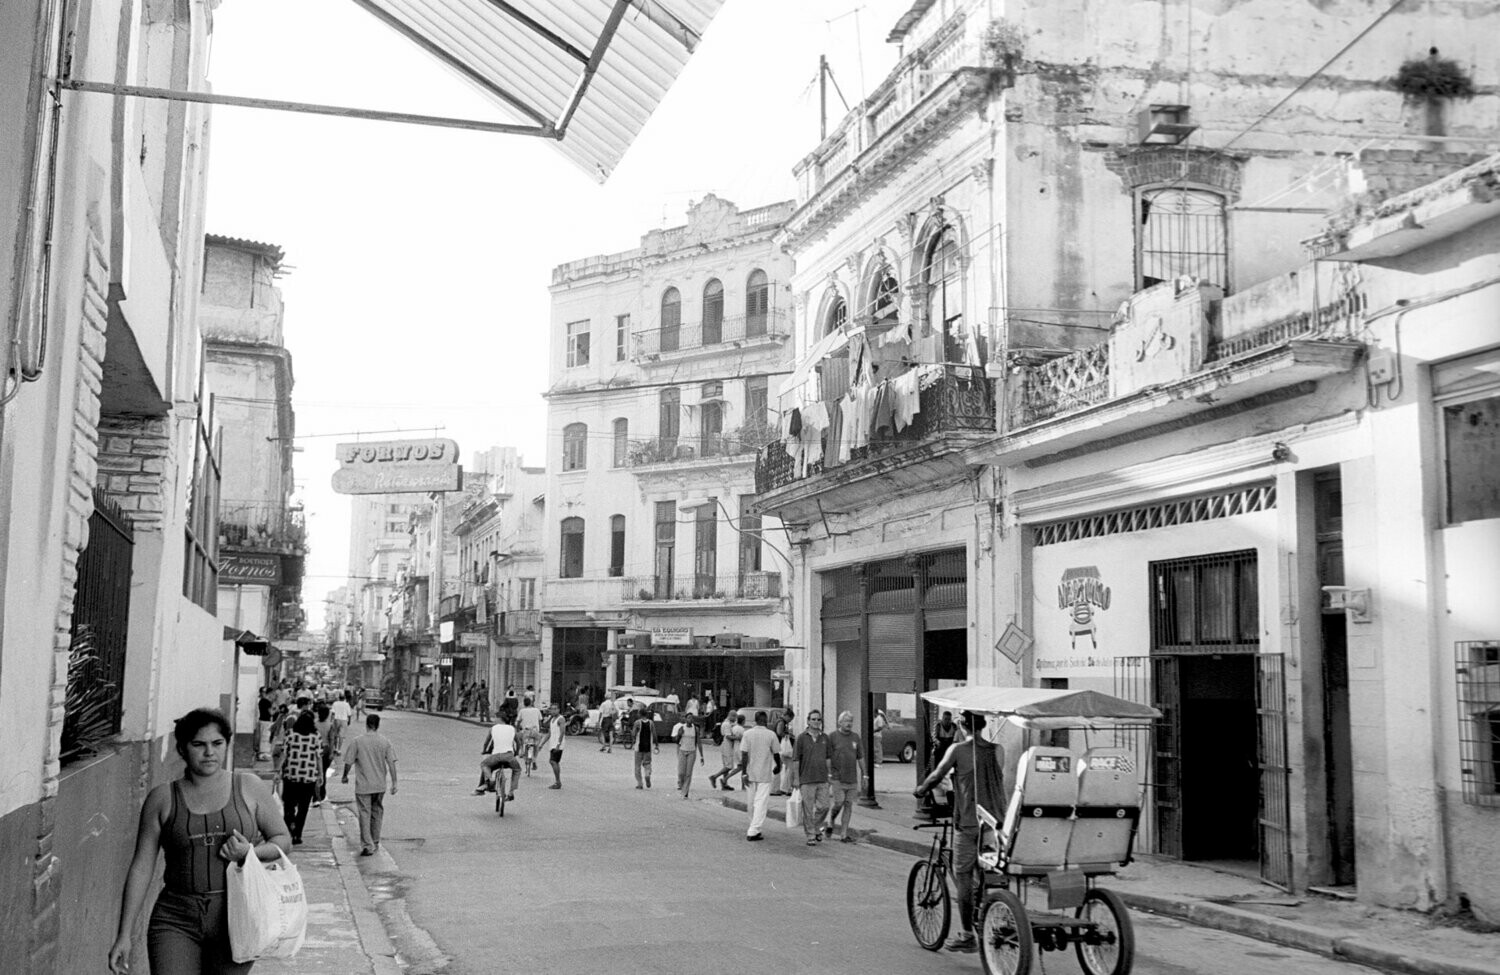 Street scene: Havana, Cuba, 2002